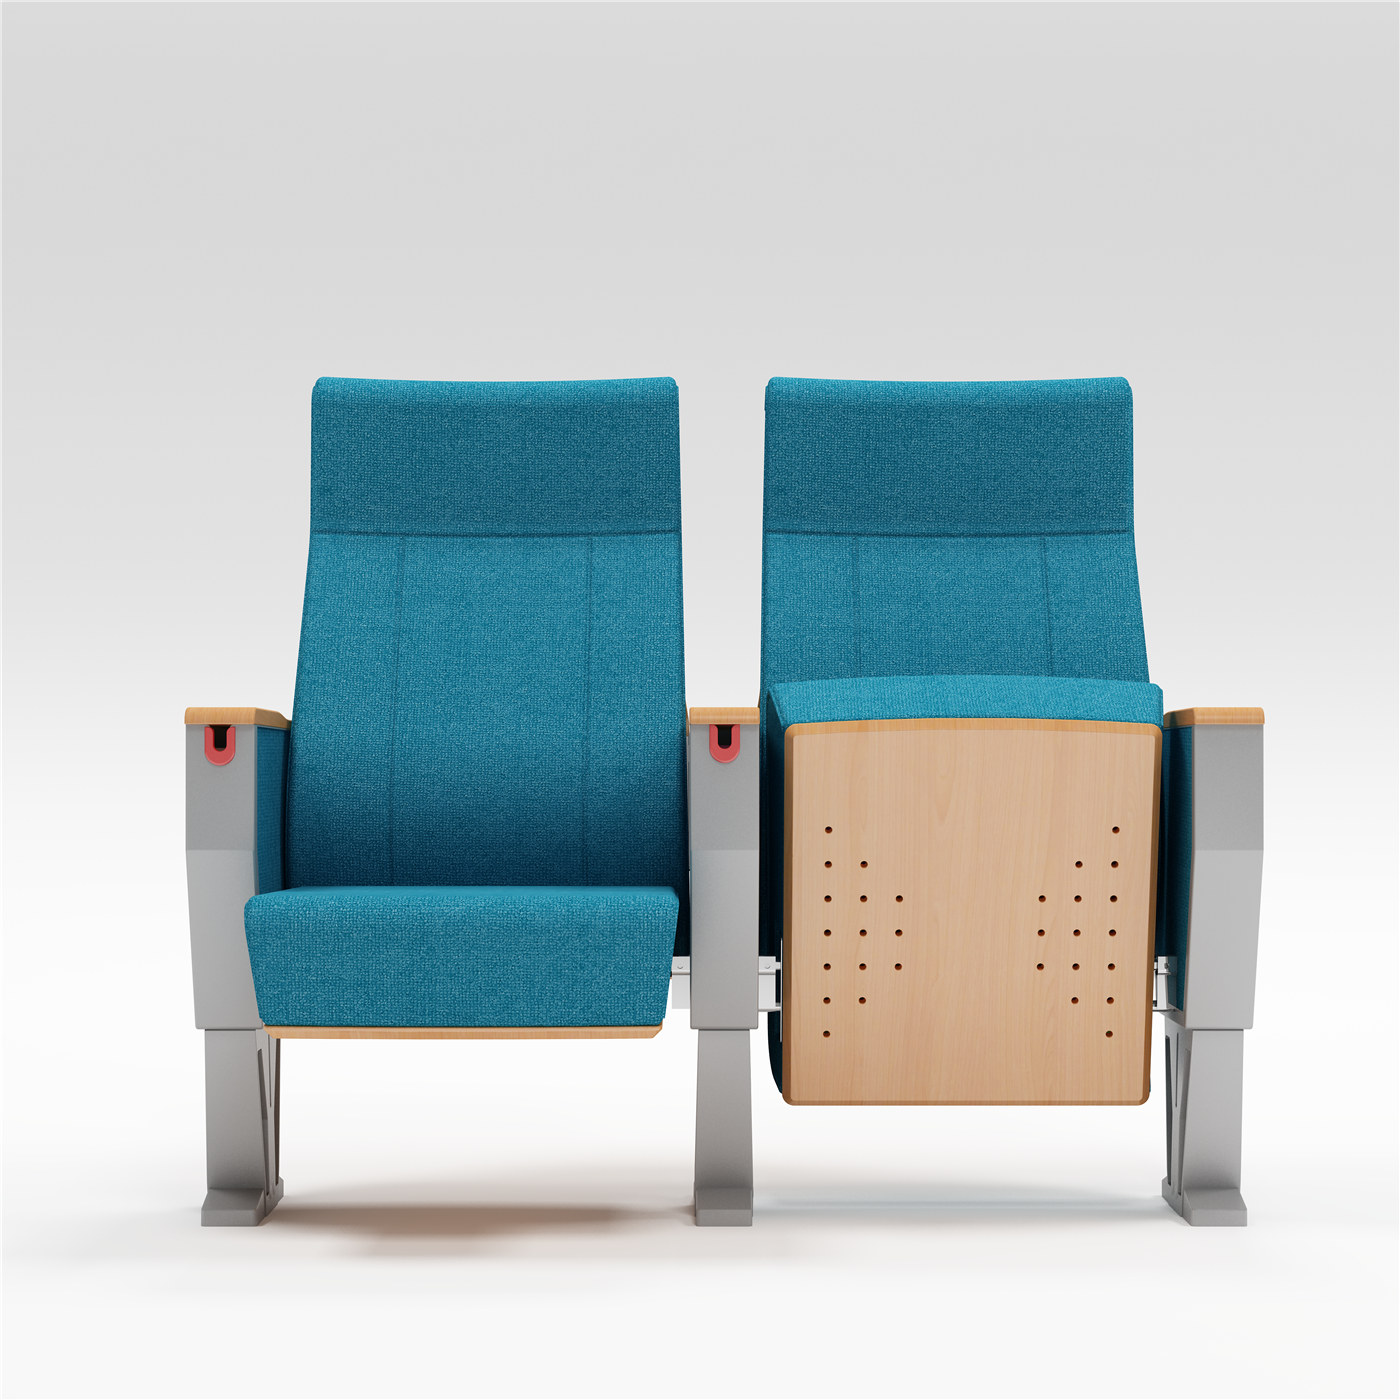 Özel Sandalye Yelpazemizle Oditoryum Oturma düzeninizi Bir Sonraki Seviyeye Taşıyın03